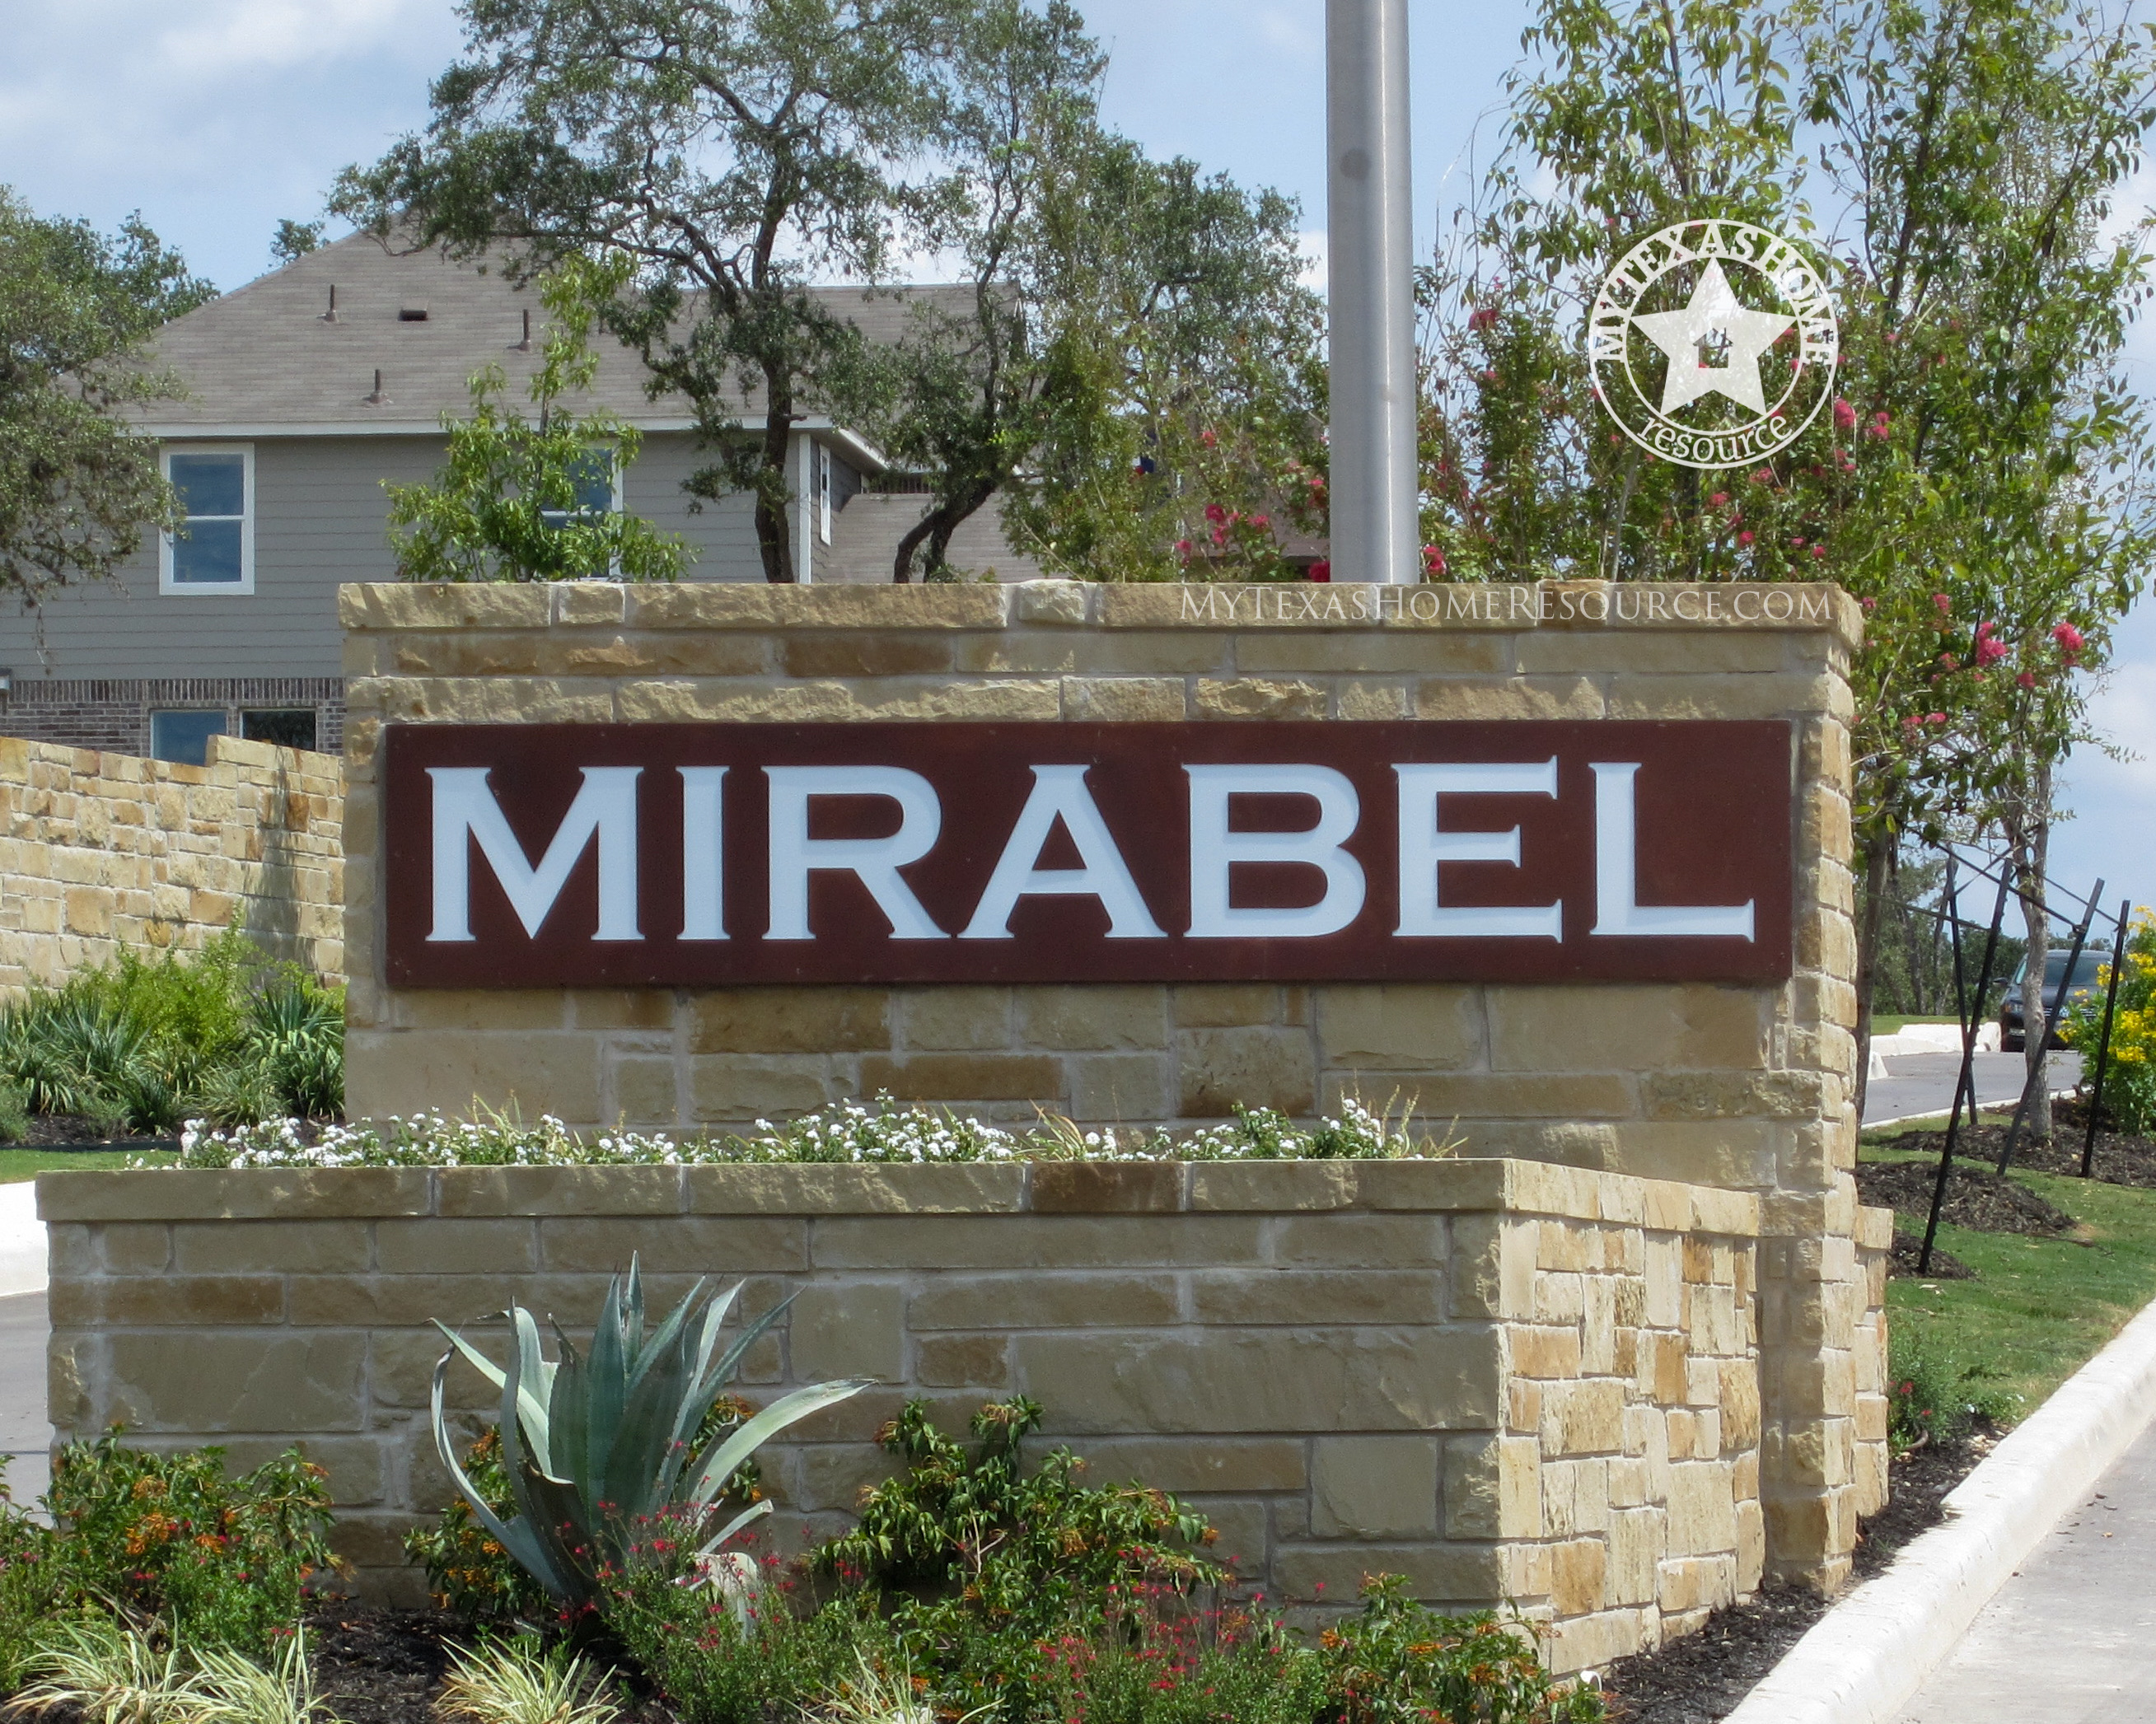 米拉贝尔社区网上正规的彩票网站，得克萨斯州